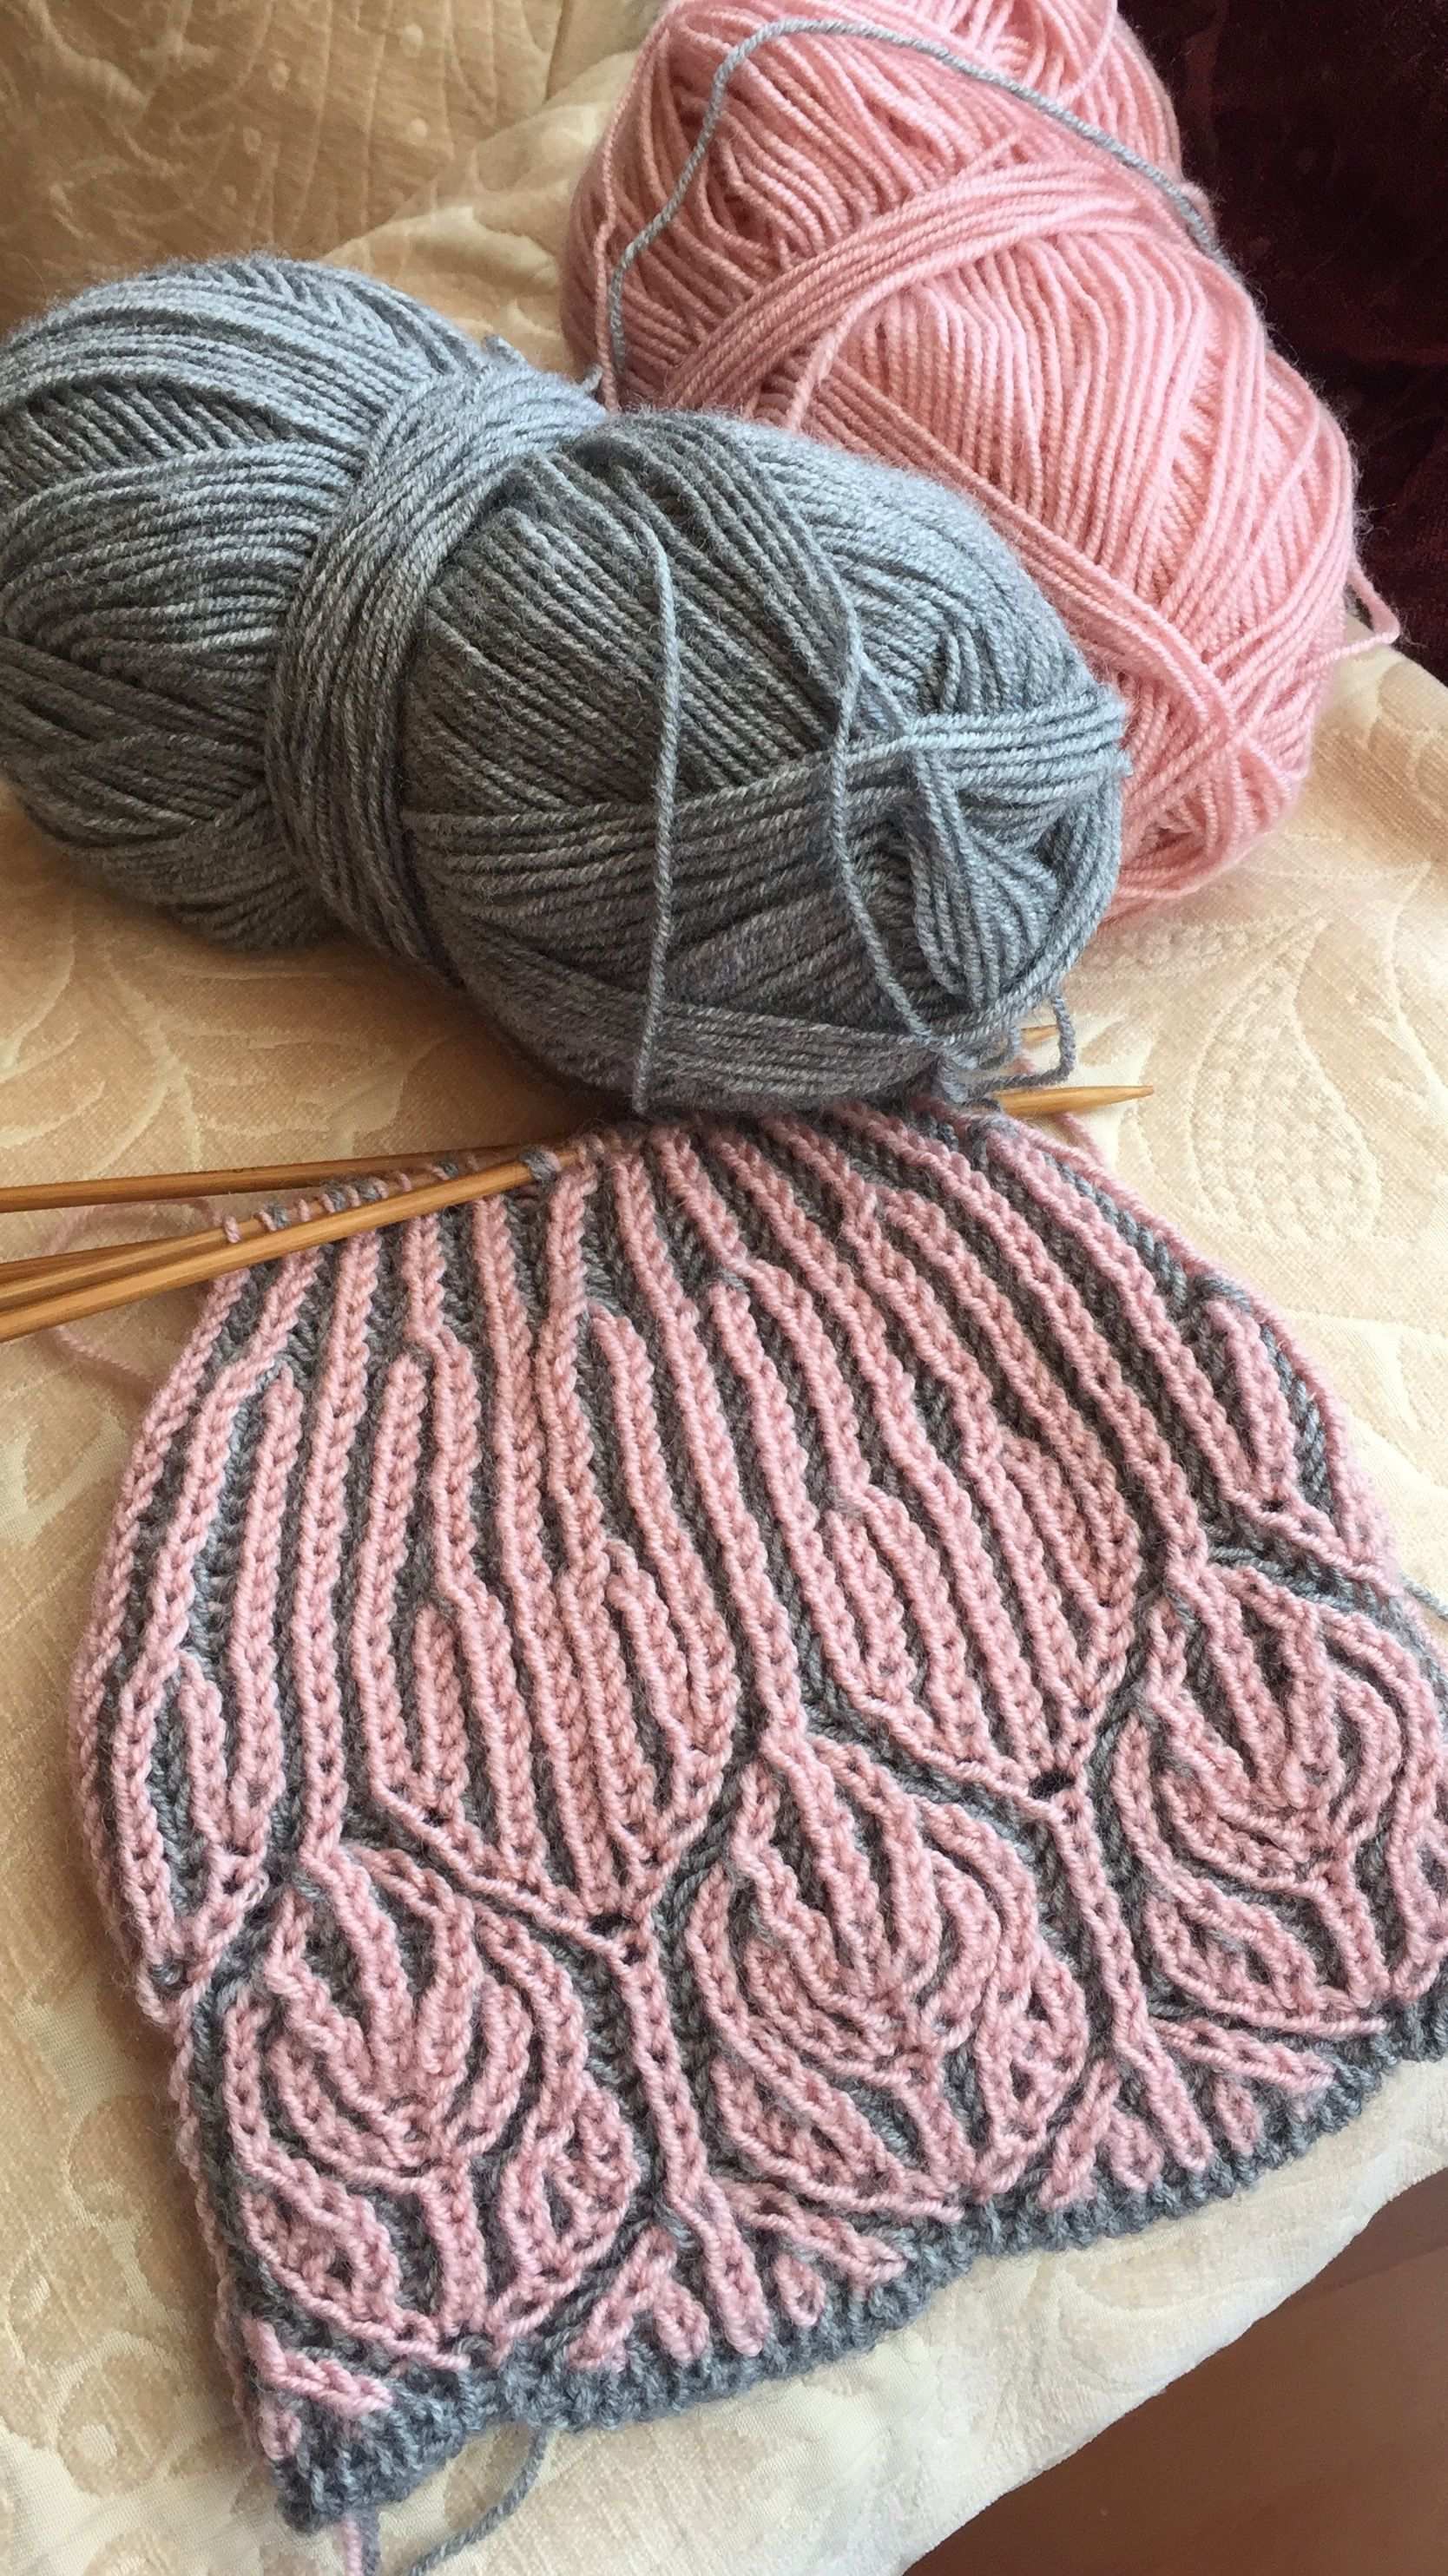 Pink Grey Brioche Knitting Ausser Fur Eine Farbkombinationsidee Welcome To Blog In 2020 Mutze Stricken Stricken Und Hakeln Strickmuster